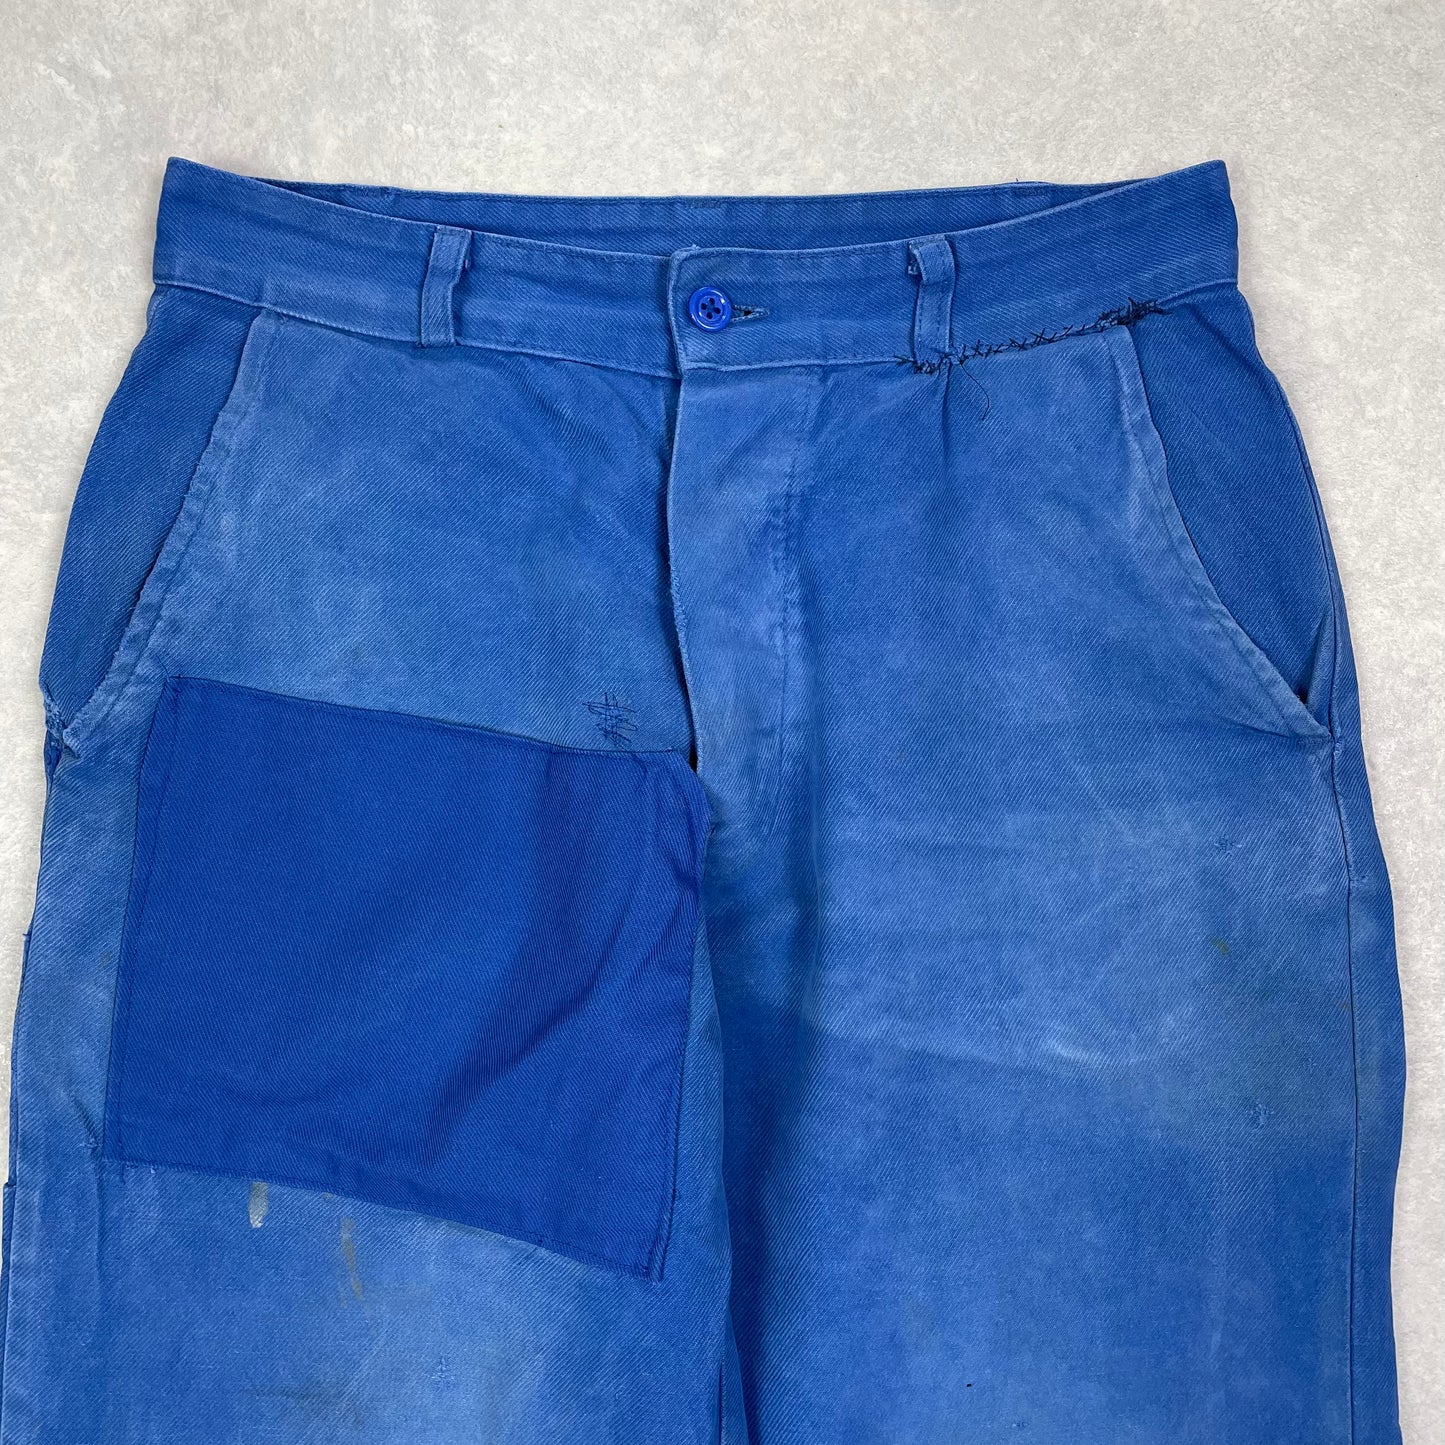 Vintage Bleu de Travail Pants #1